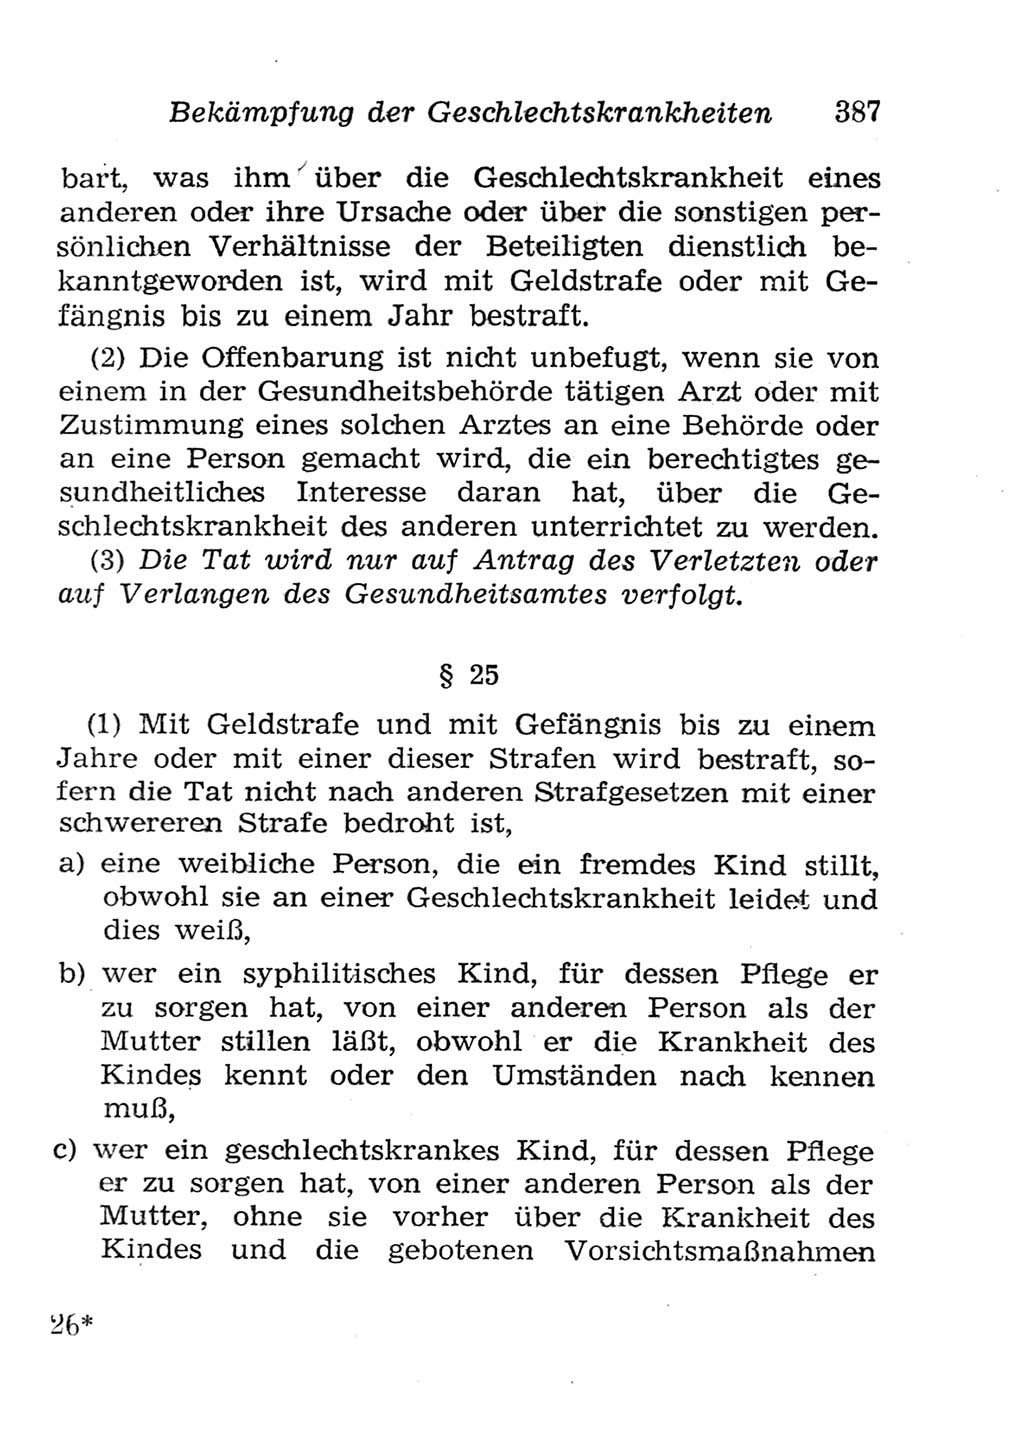 Strafgesetzbuch (StGB) und andere Strafgesetze [Deutsche Demokratische Republik (DDR)] 1957, Seite 387 (StGB Strafges. DDR 1957, S. 387)